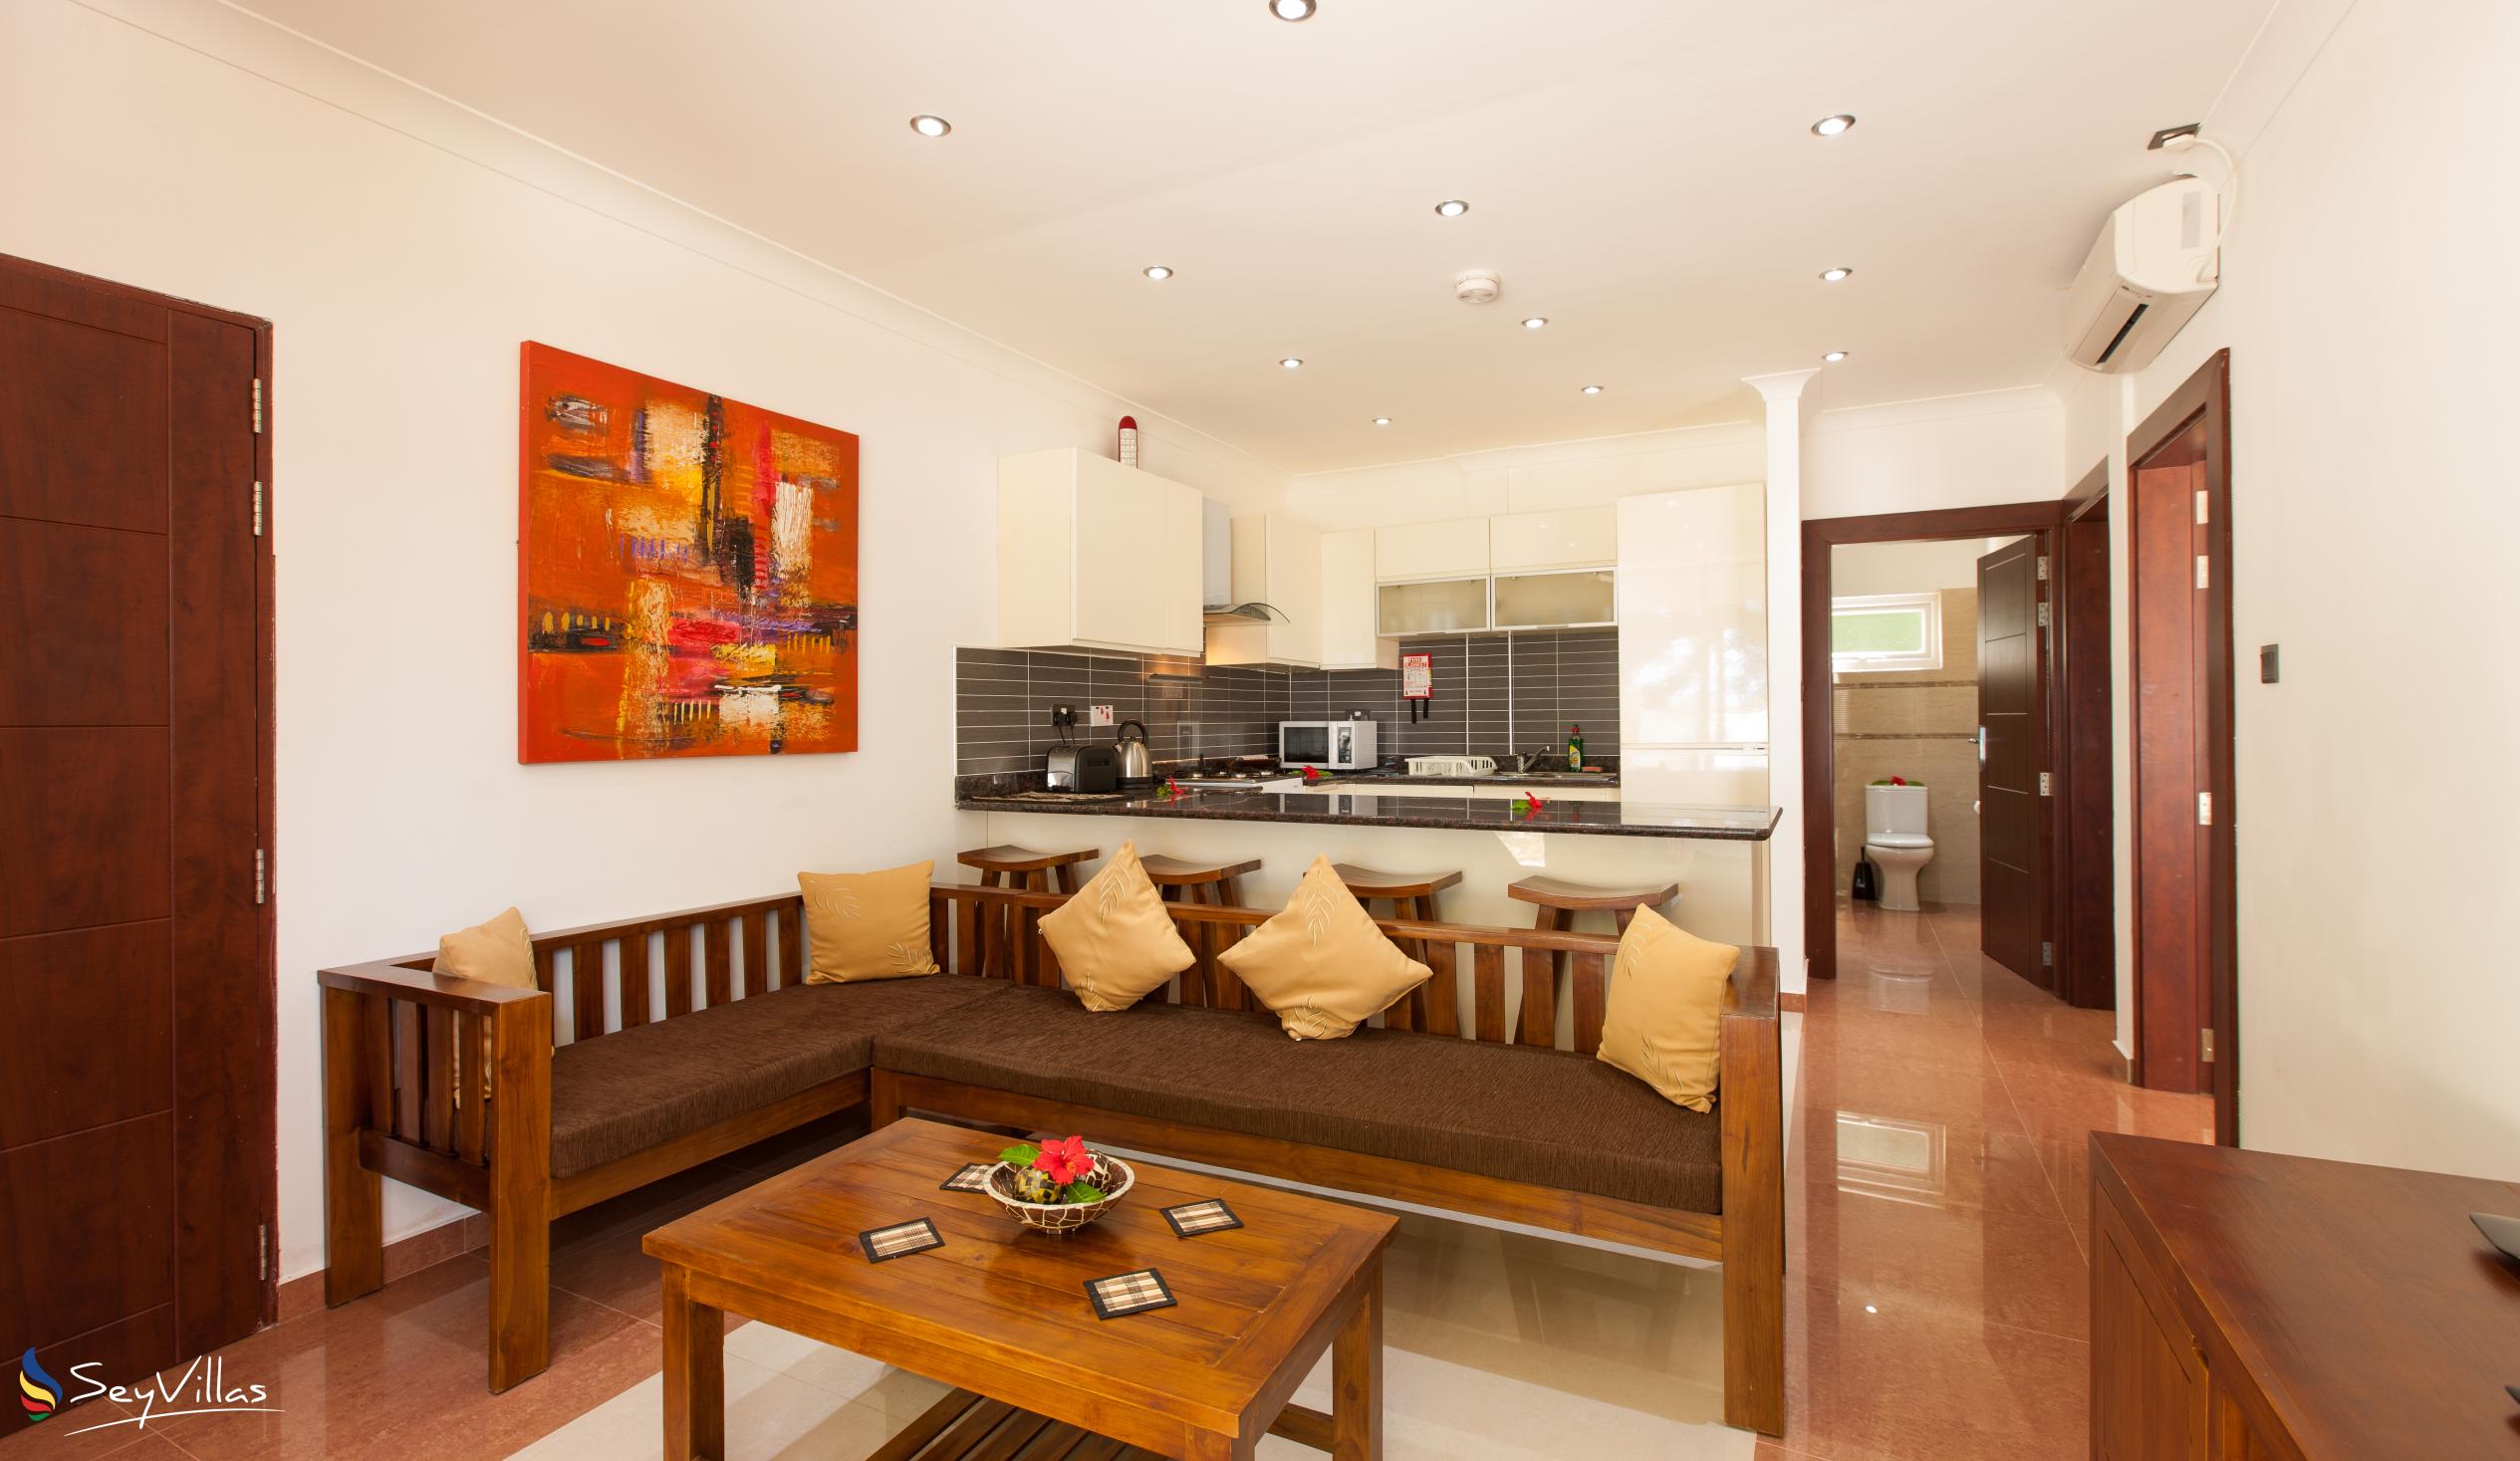 Foto 45: YASAD Luxury Beach Residence - Appartement mit 2 Schlafzimmern - Praslin (Seychellen)